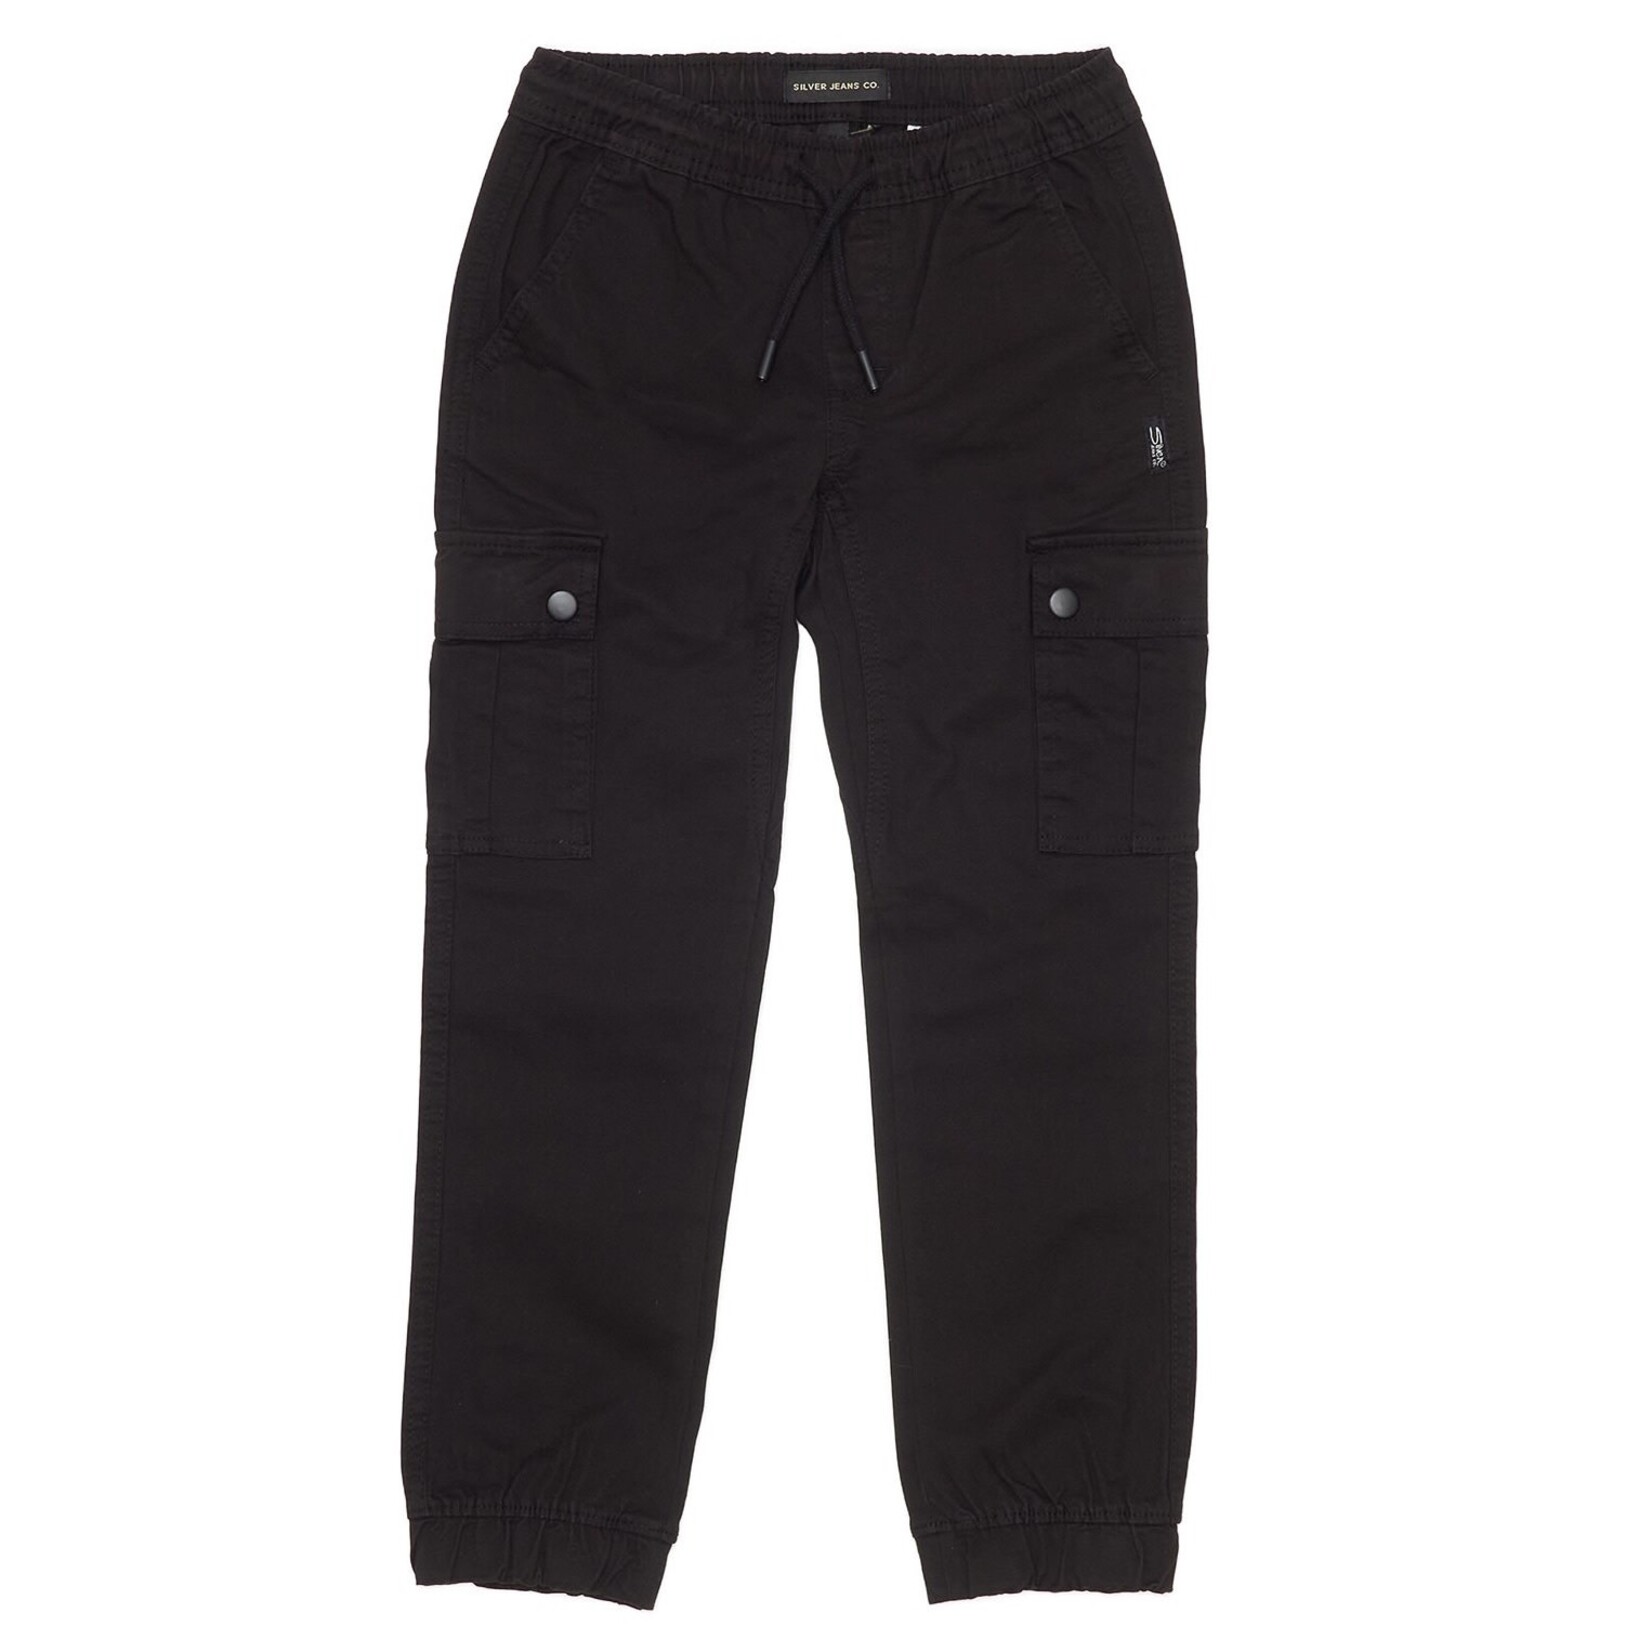 Silver Jeans - Black Cairo Cargo Jogger - Kraz E Threads